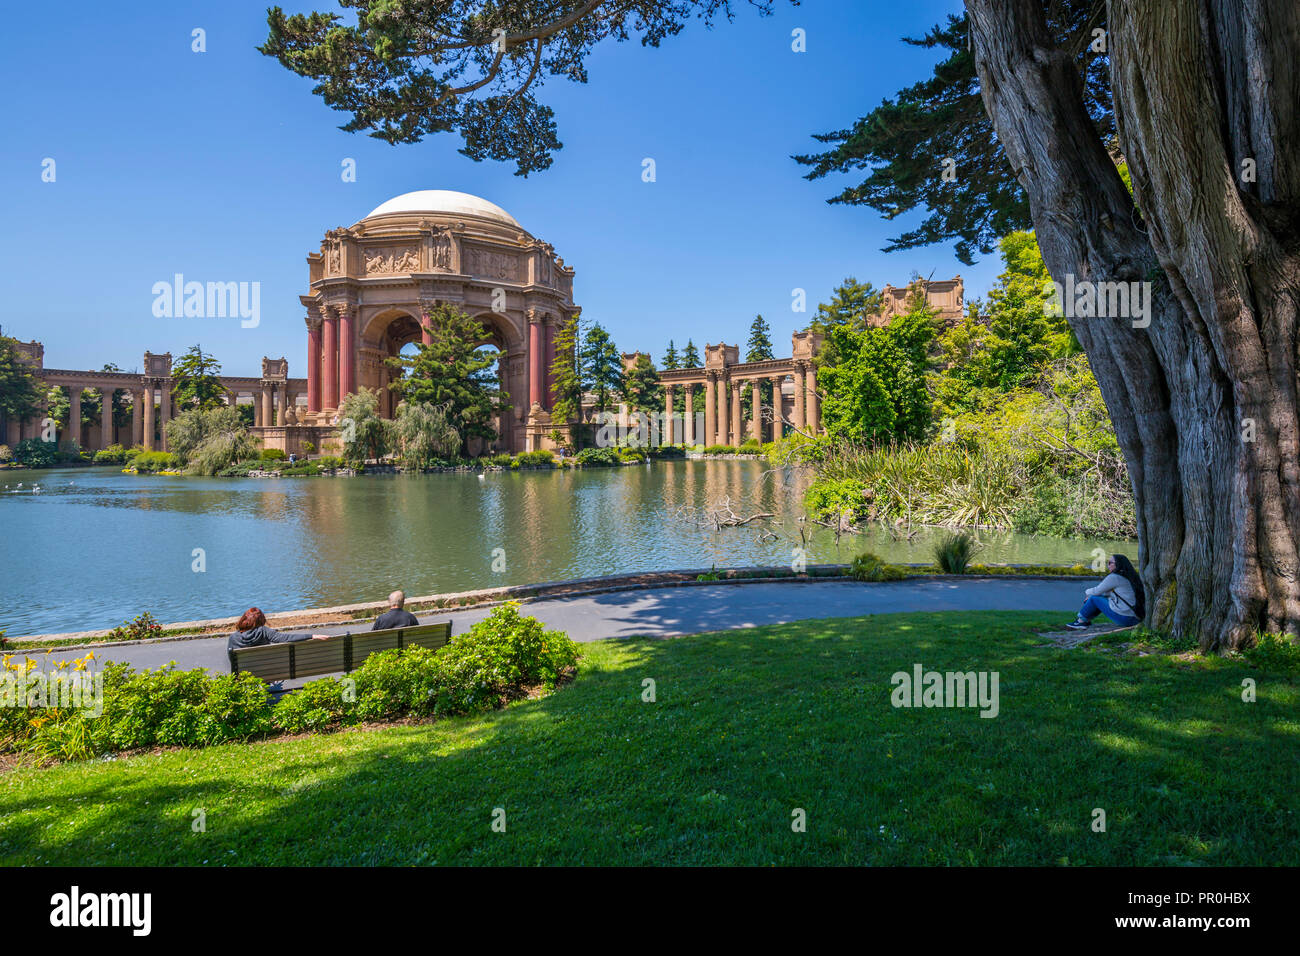 Blick auf den Palast der Schönen Künste Theater, San Francisco, Kalifornien, Vereinigte Staaten von Amerika, Nordamerika Stockfoto